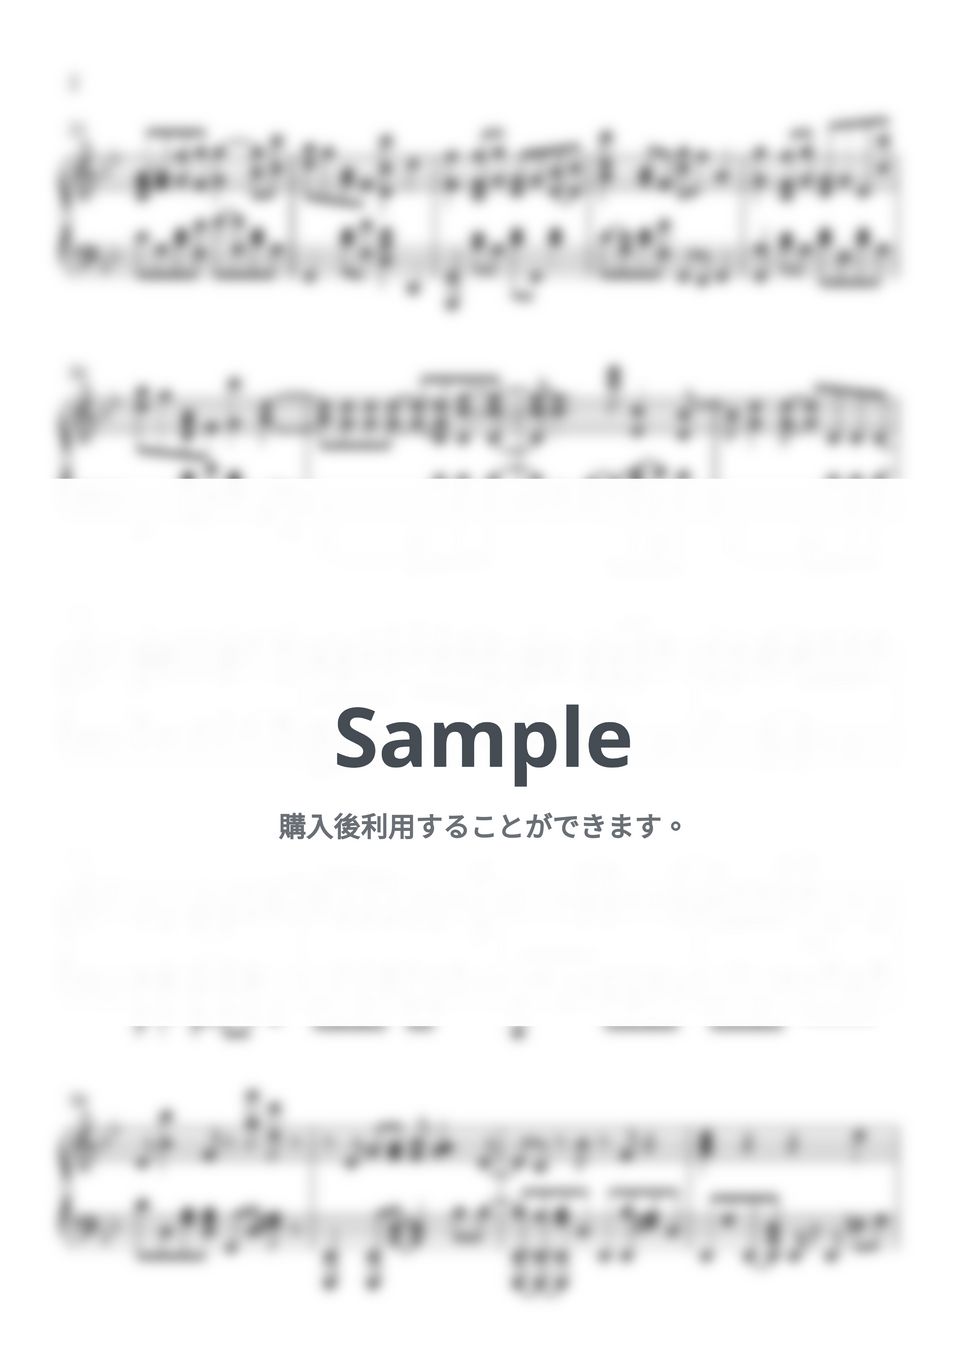 ヨアソビ - 勇者 (楽譜、MIDI、ドラム & WAVファイル) by AsianMusicBox